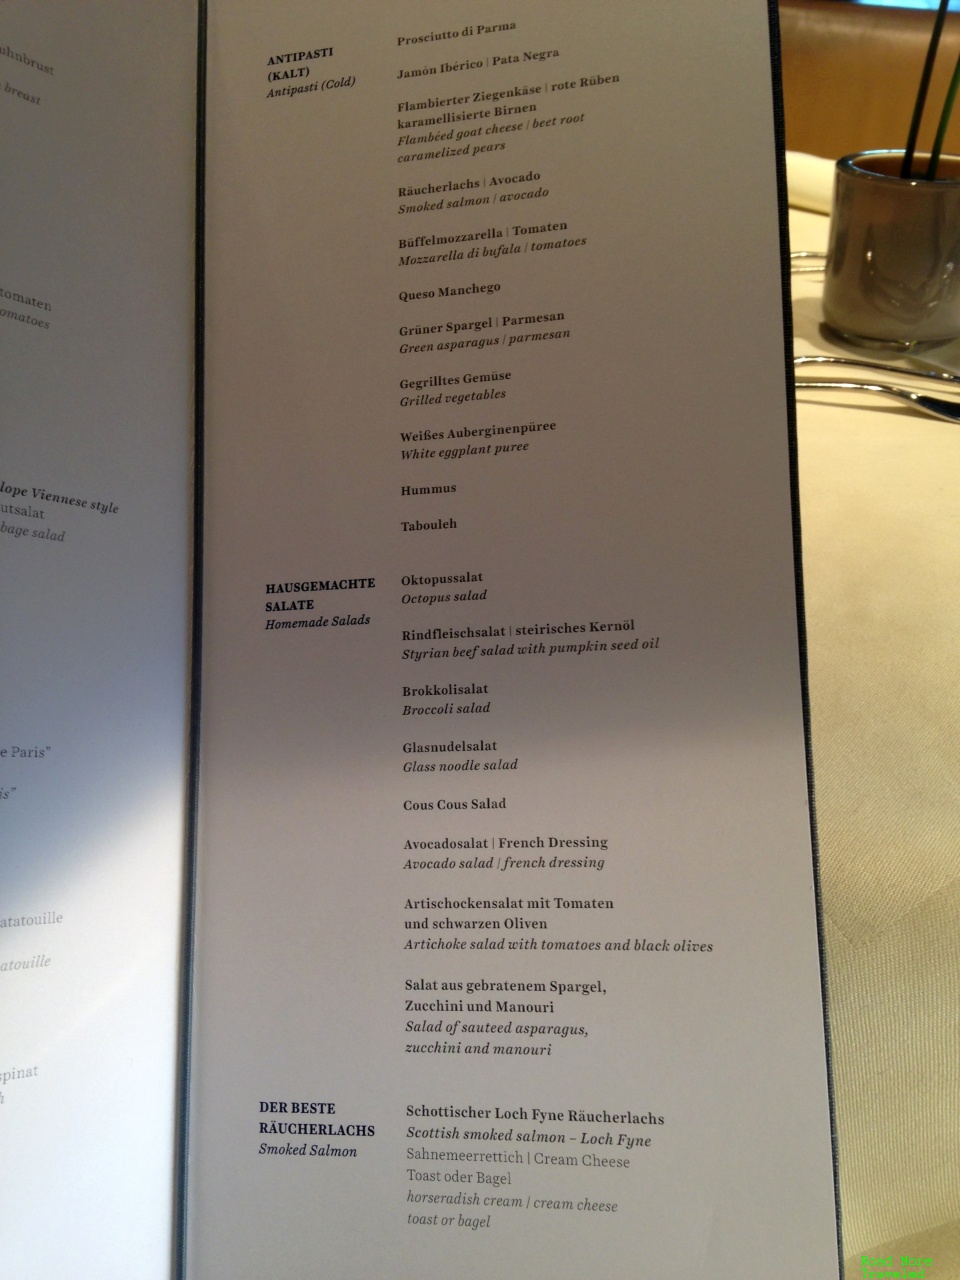 Lufthansa First Class Terminal - lunch buffet menu